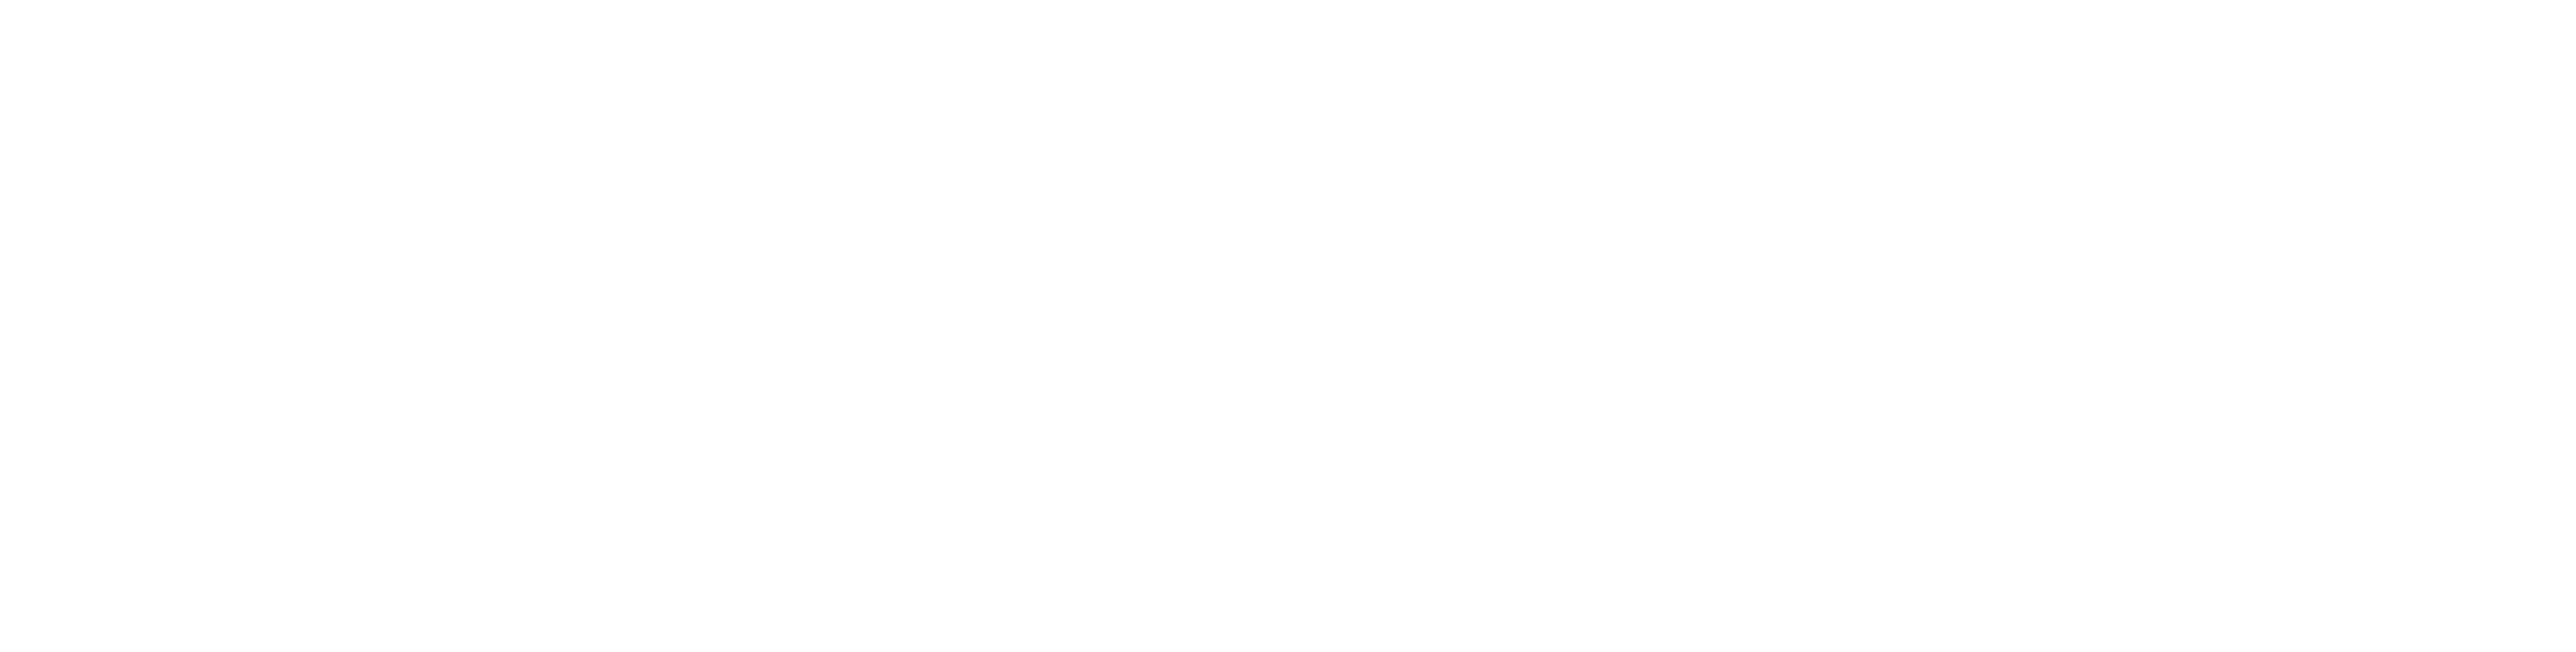 CVA logo_stacked_reversed